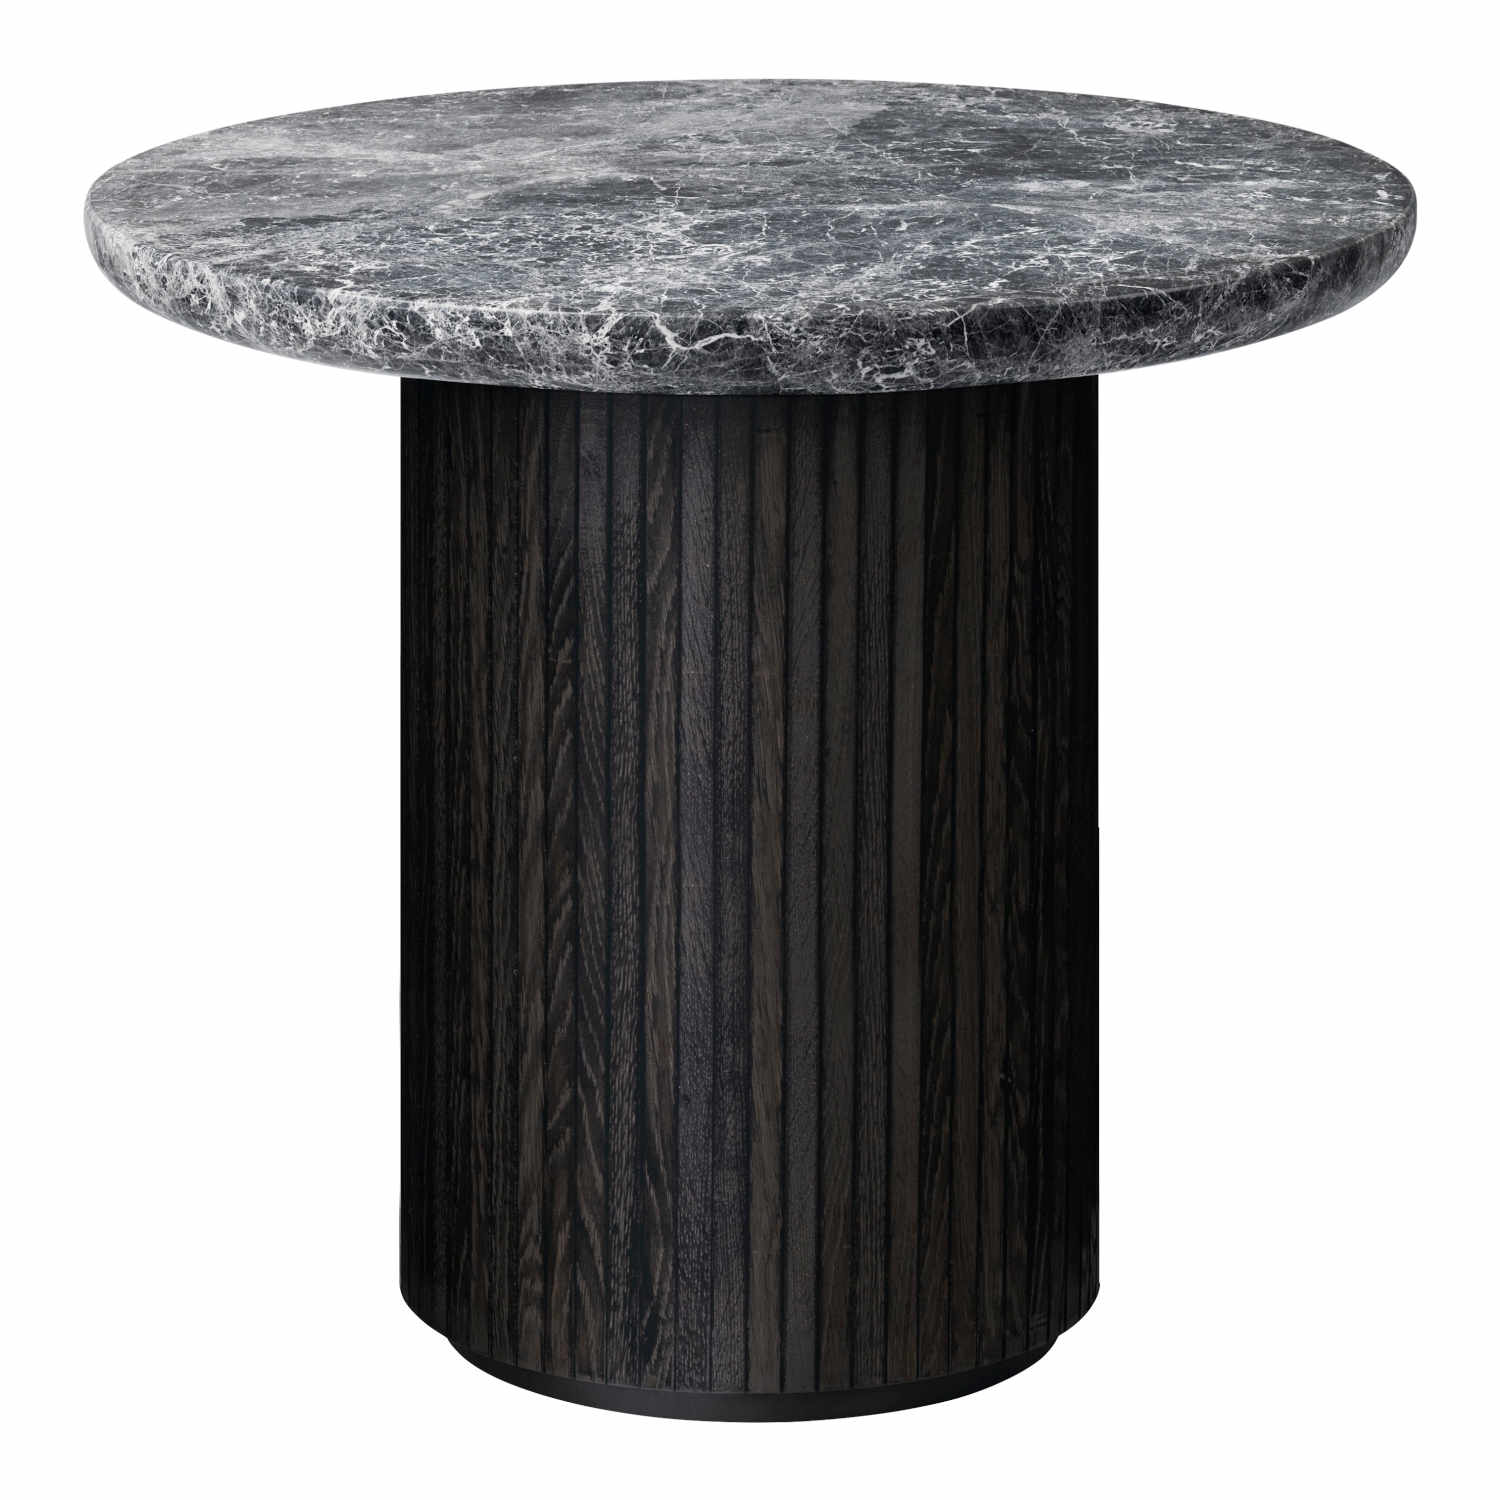 Moon Lounge Table Beistelltisch, Ausführung marmor, grey emperador/holz, stained veneer oak (braun/schwarz) von GUBI